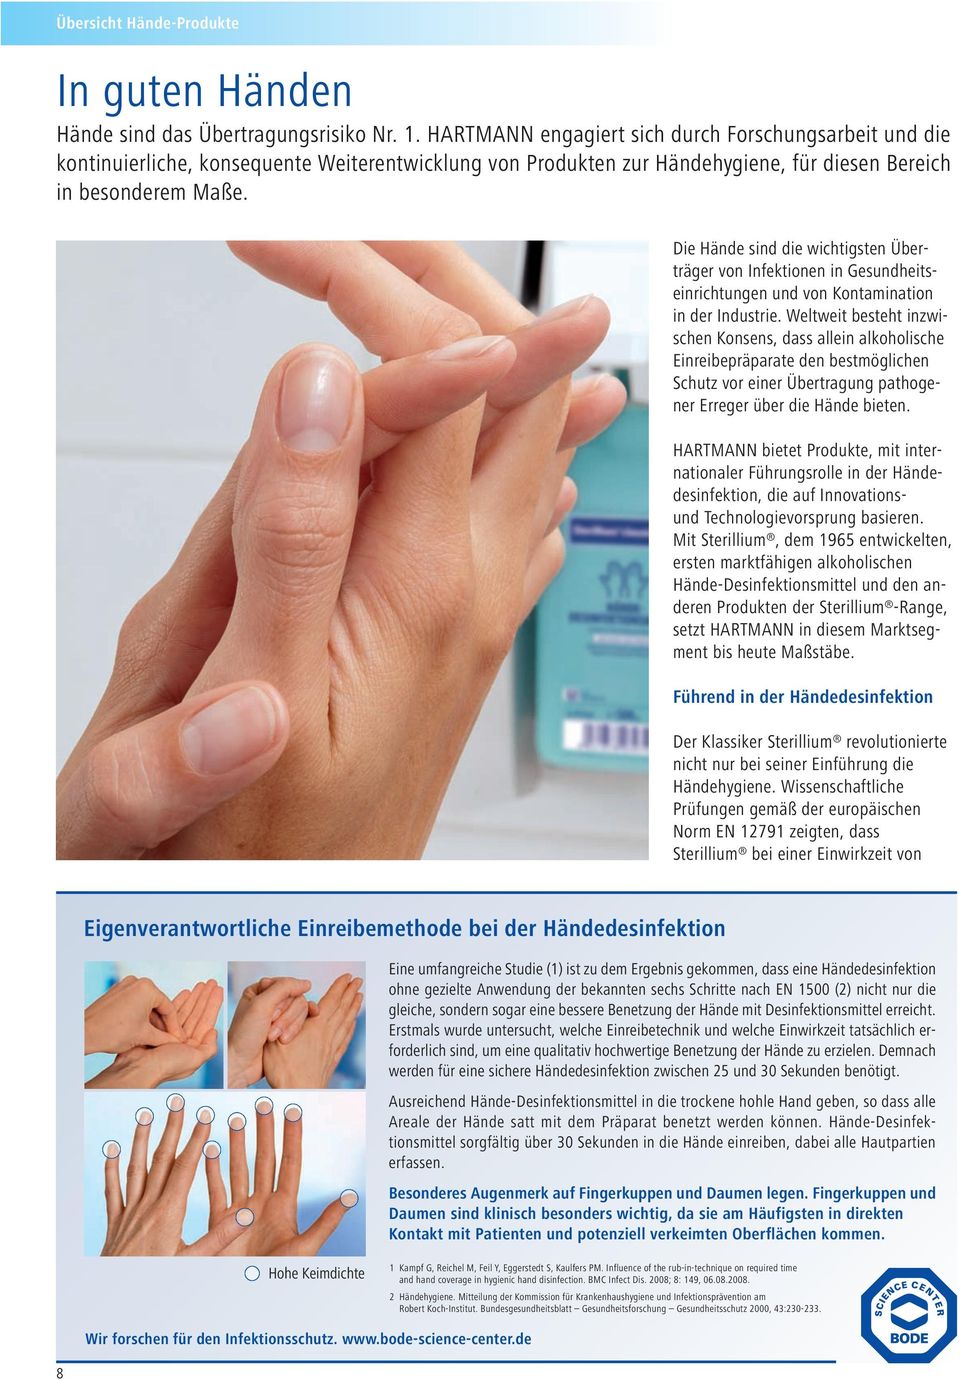 Die Hände sind die wichtigsten Überträger von Infektionen in Gesundheitseinrichtungen und von Kontamination in der Industrie.